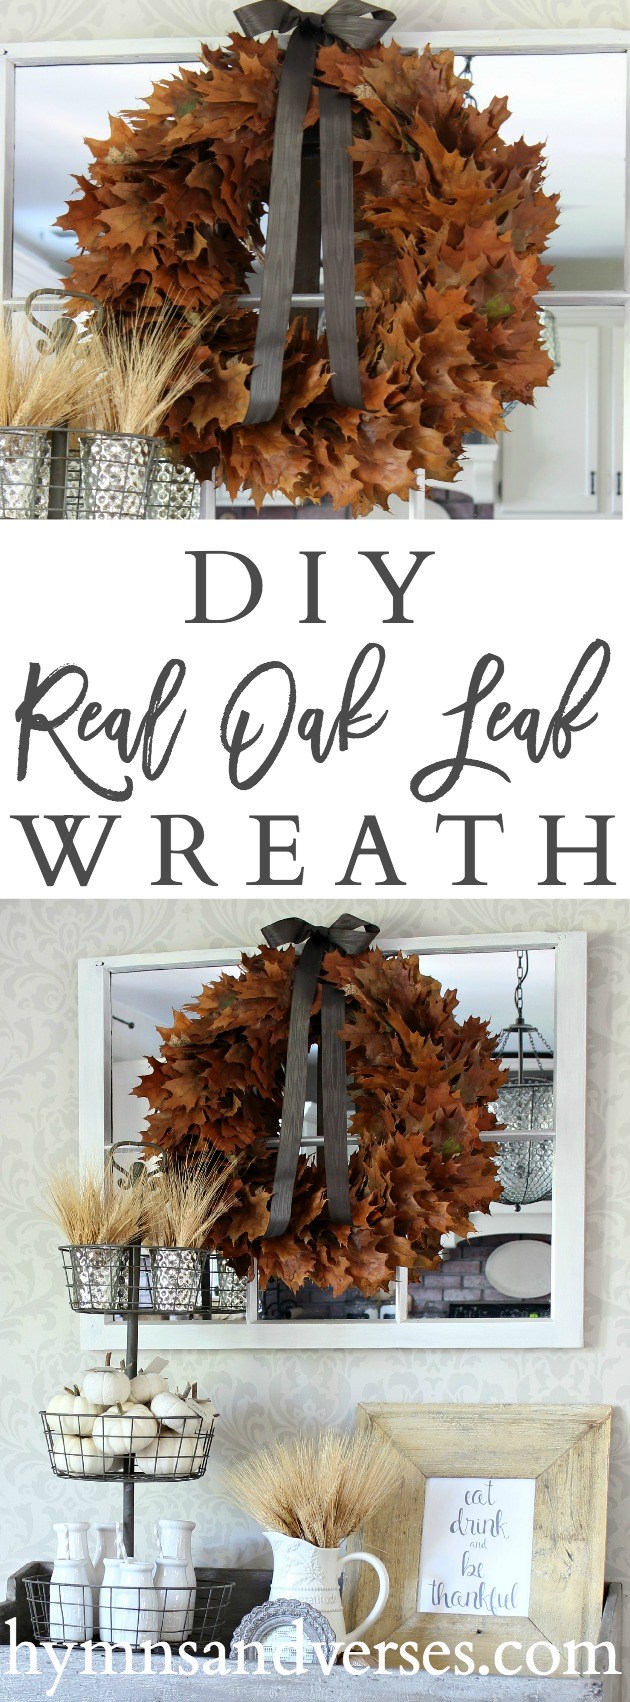 Real Oak Leaf Wreath